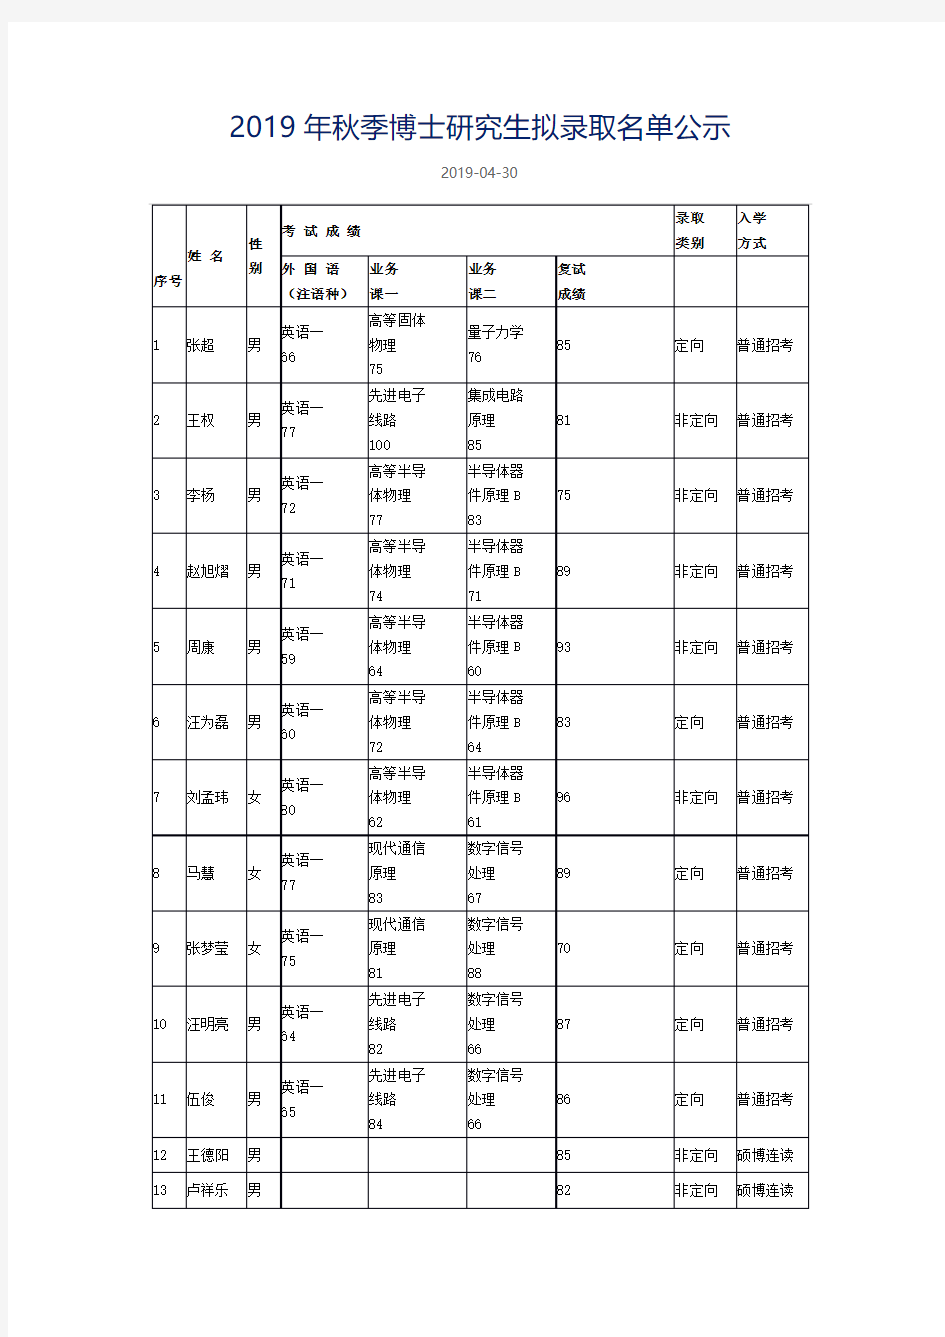 中科院上海微系统所2019博士拟录取名单